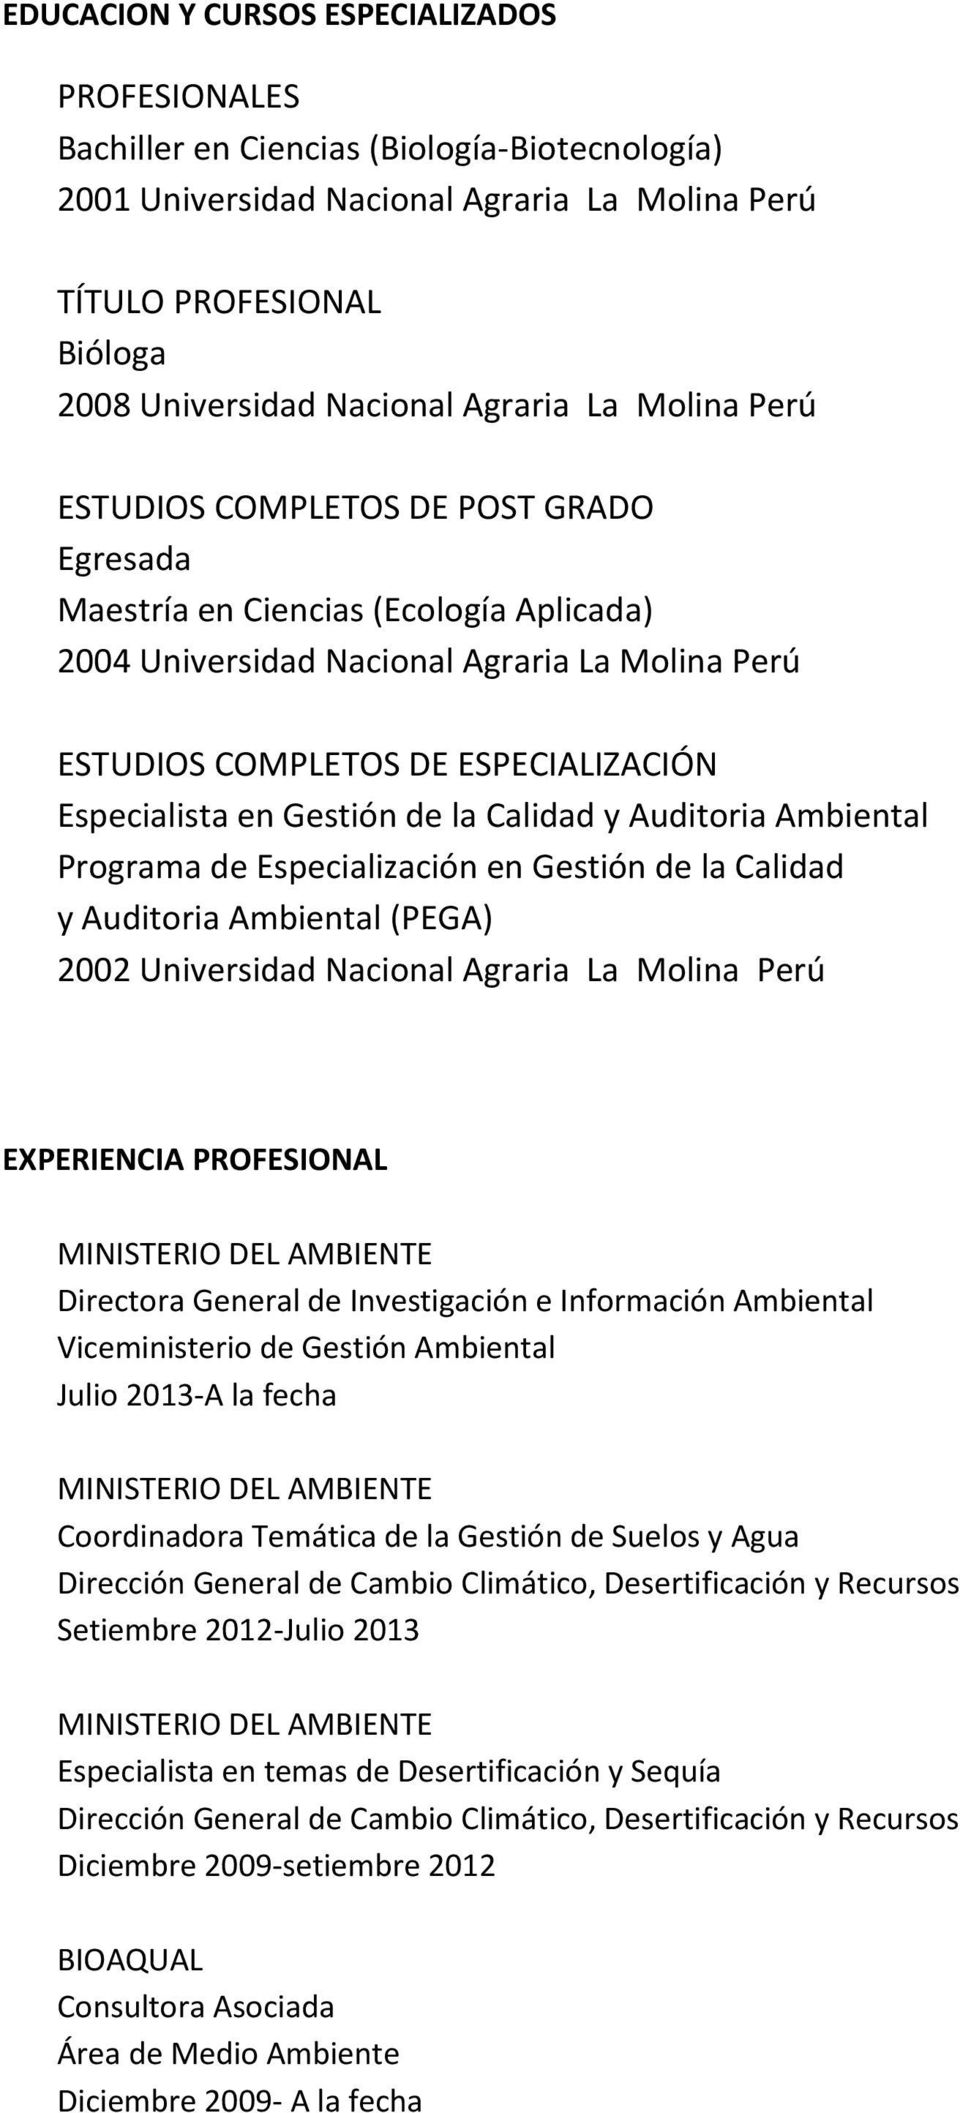 Auditoria Ambiental (PEGA) 2002 Perú EXPERIENCIA PROFESIONAL Directora General de Investigación e Información Ambiental Viceministerio de Gestión Ambiental Julio 2013-A la fecha Coordinadora Temática